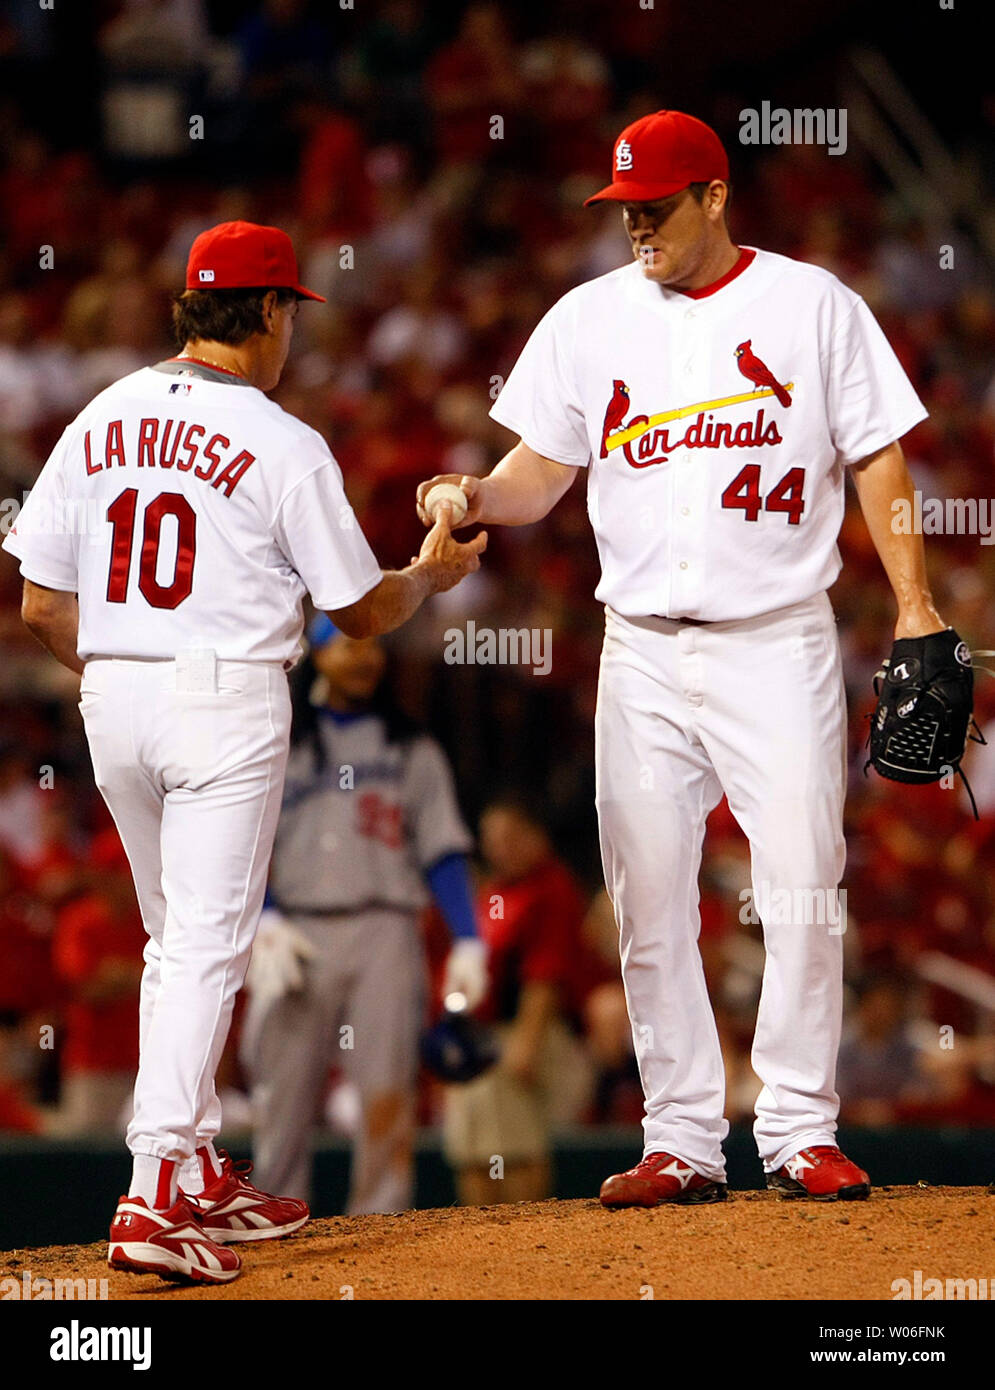 Former St. Louis Cardinals players Jason Isringhausen and Scott